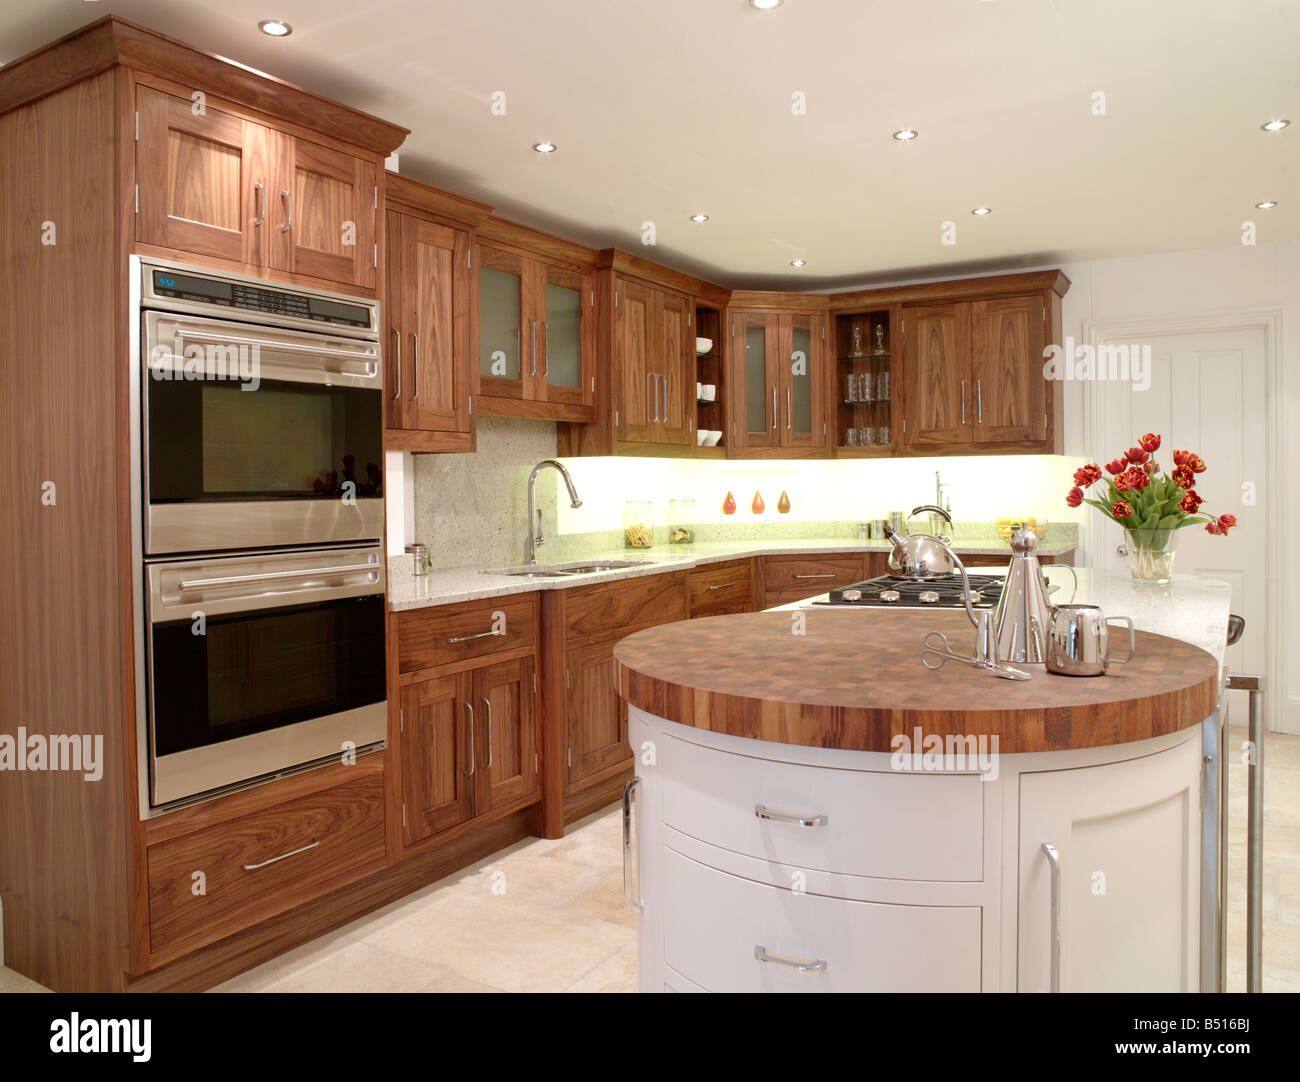 John Ladbury legno scuro cucina con legno tondo unità peninsulare Foto Stock